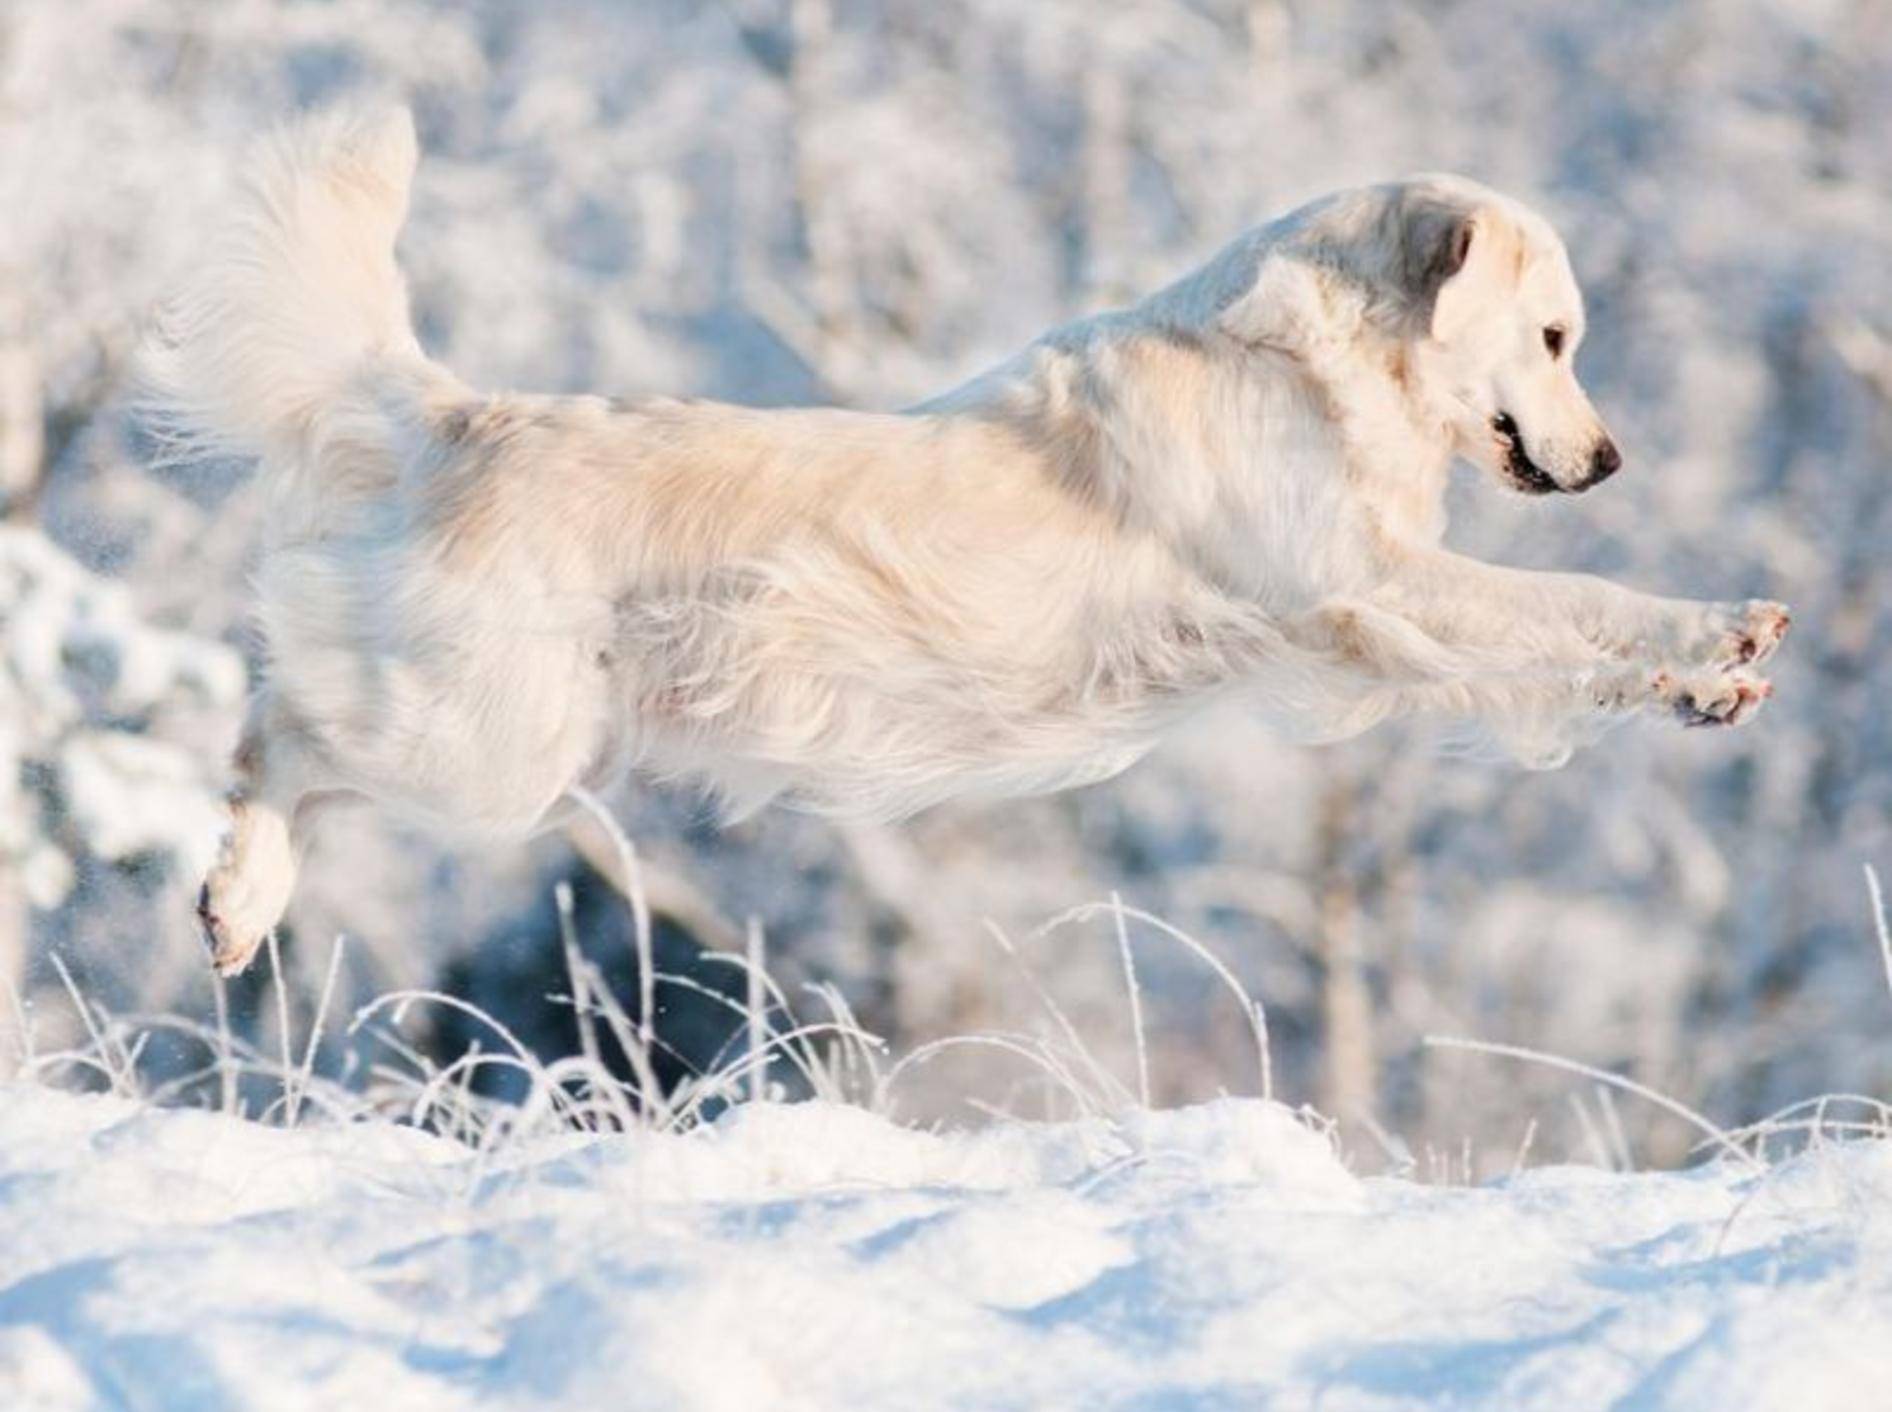 Schnee bietet eine perfekte Spielfläche für Hunde, wie dieser Golden Retriever beweist